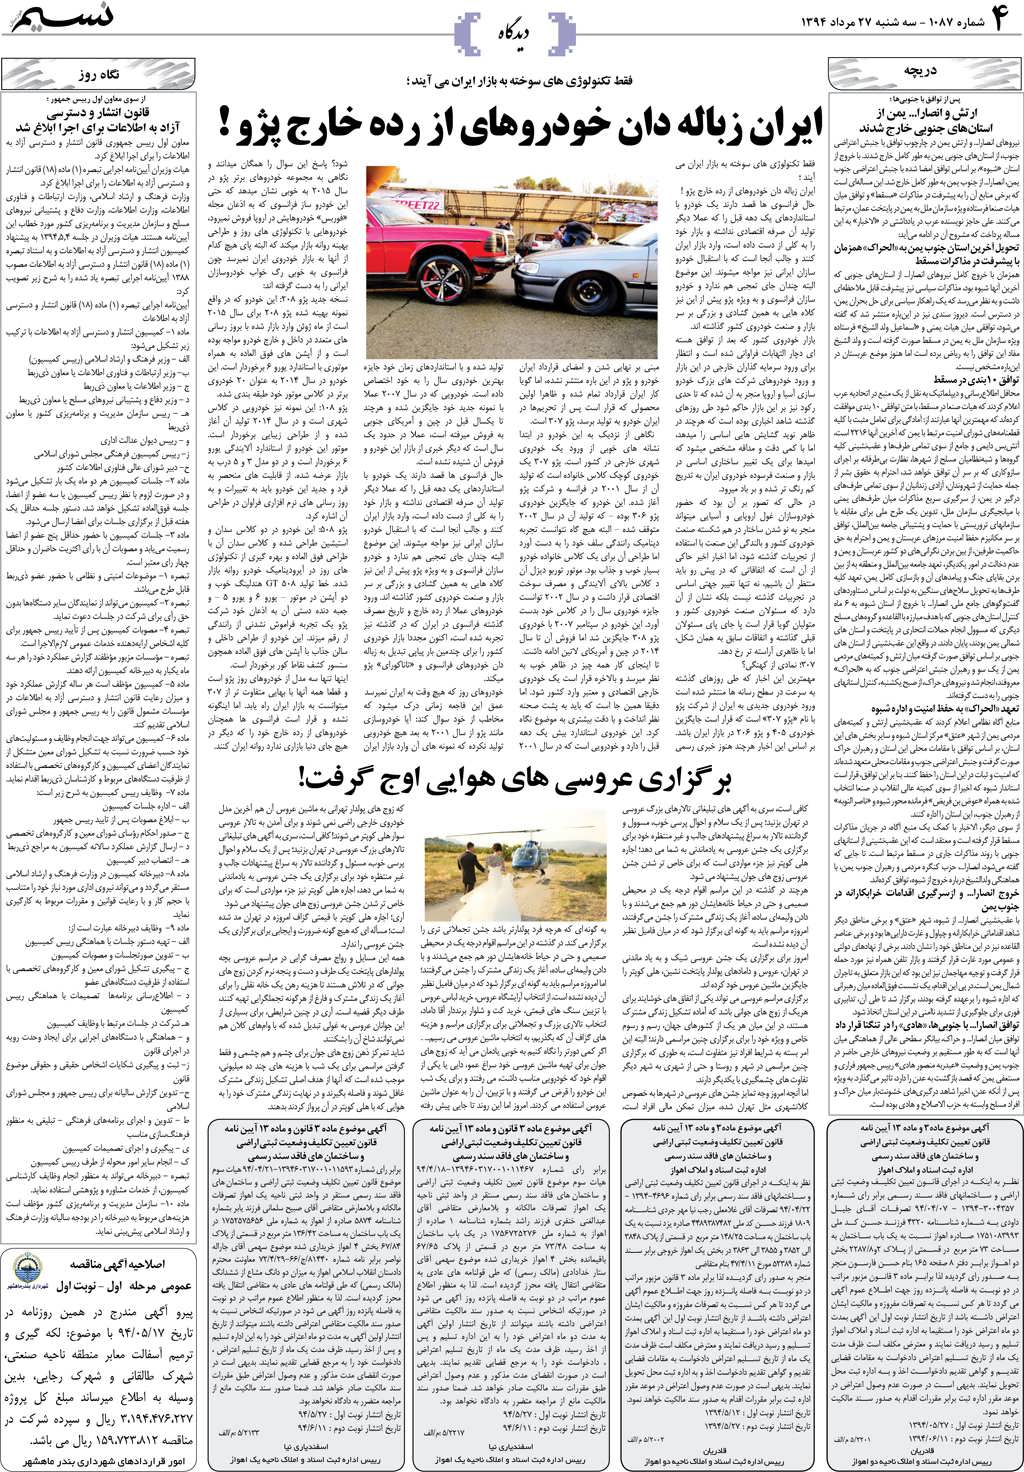 صفحه دیدگاه روزنامه نسیم شماره 1087